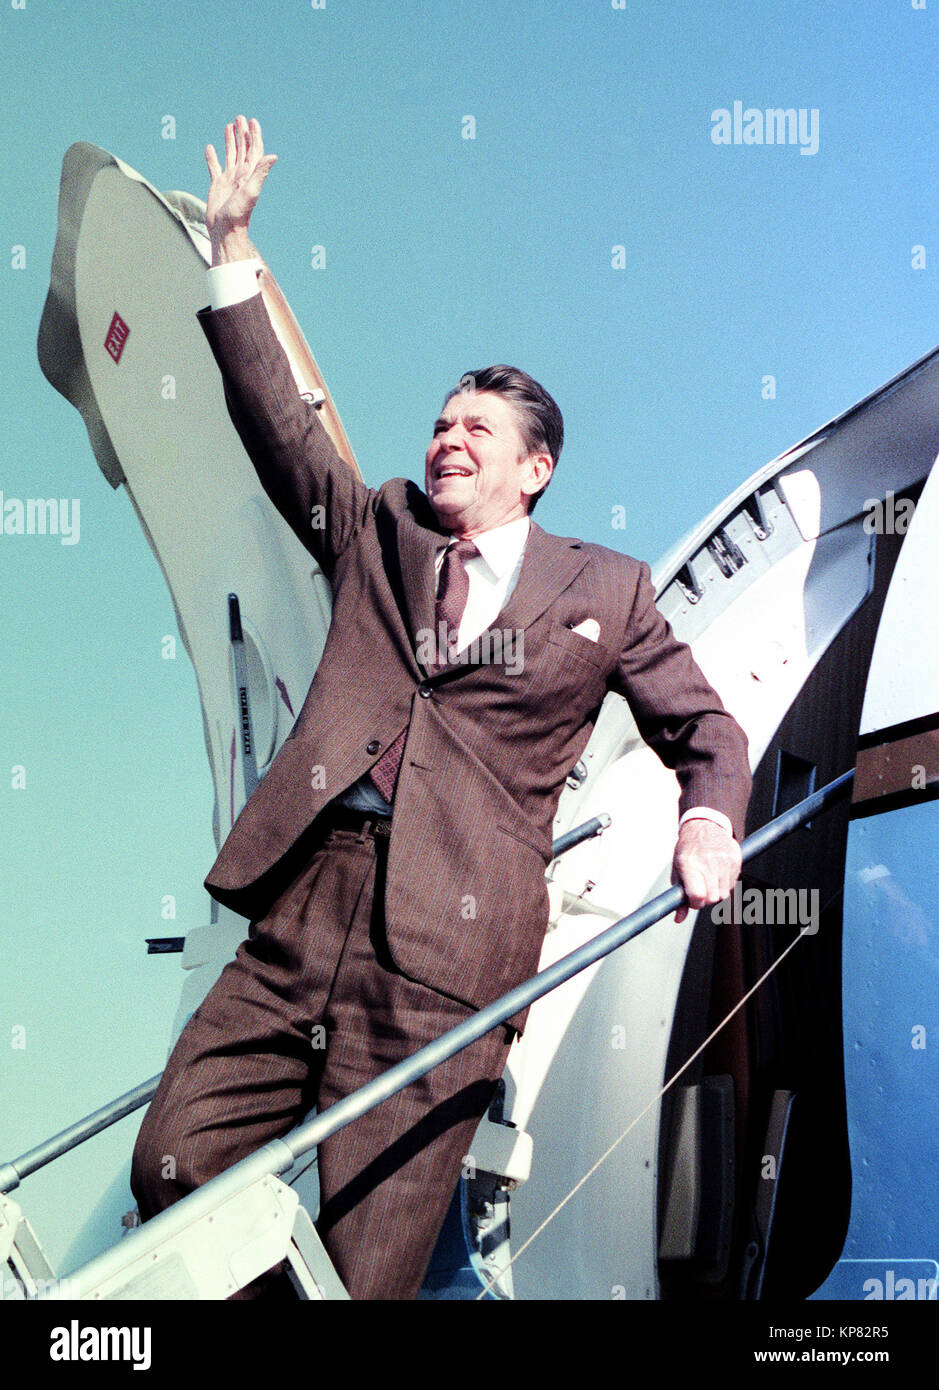 Le Président élu Ronald W. Reagan de vagues sympathisants avant de partir pour un voyage à bord d'un aéronef. Banque D'Images